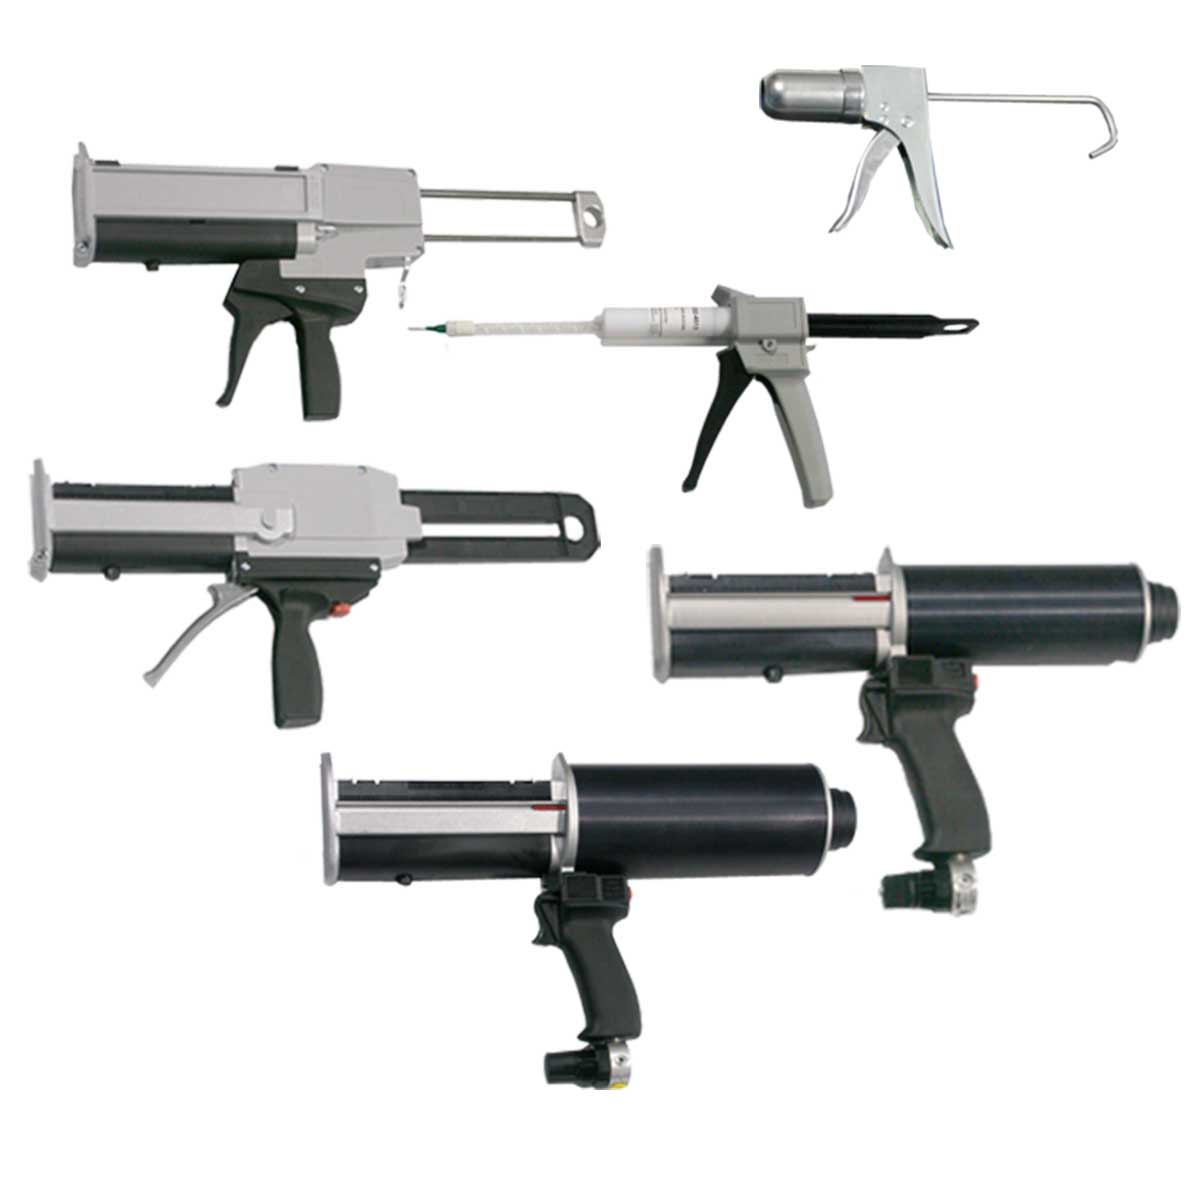 Manual and Pneumatic Dispensing Guns